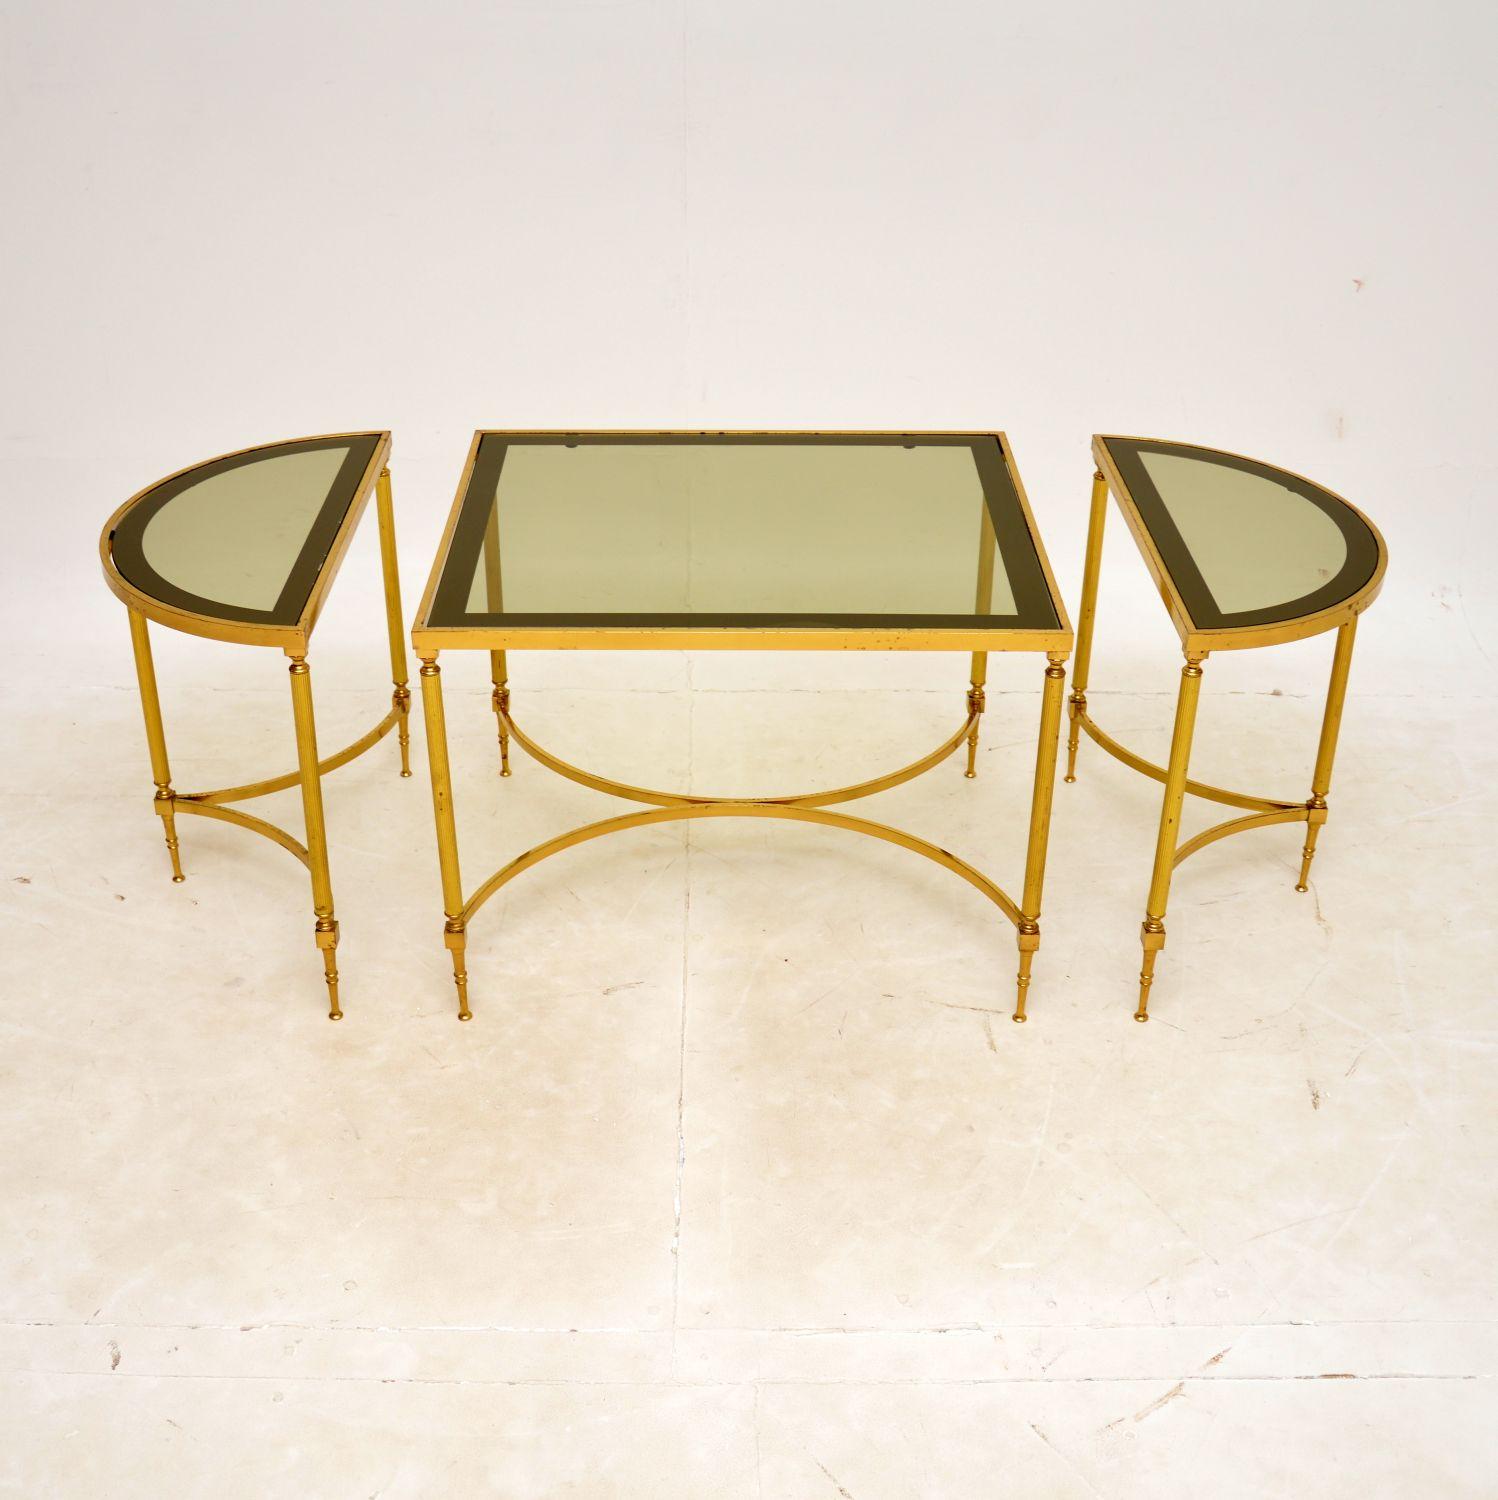 Superbe ensemble de trois tables / table à café en laiton et verre, datant des années 1970.

La qualité est excellente et ils sont magnifiquement conçus. Cet ensemble se compose d'une grande table centrale rectangulaire et de deux petites tables